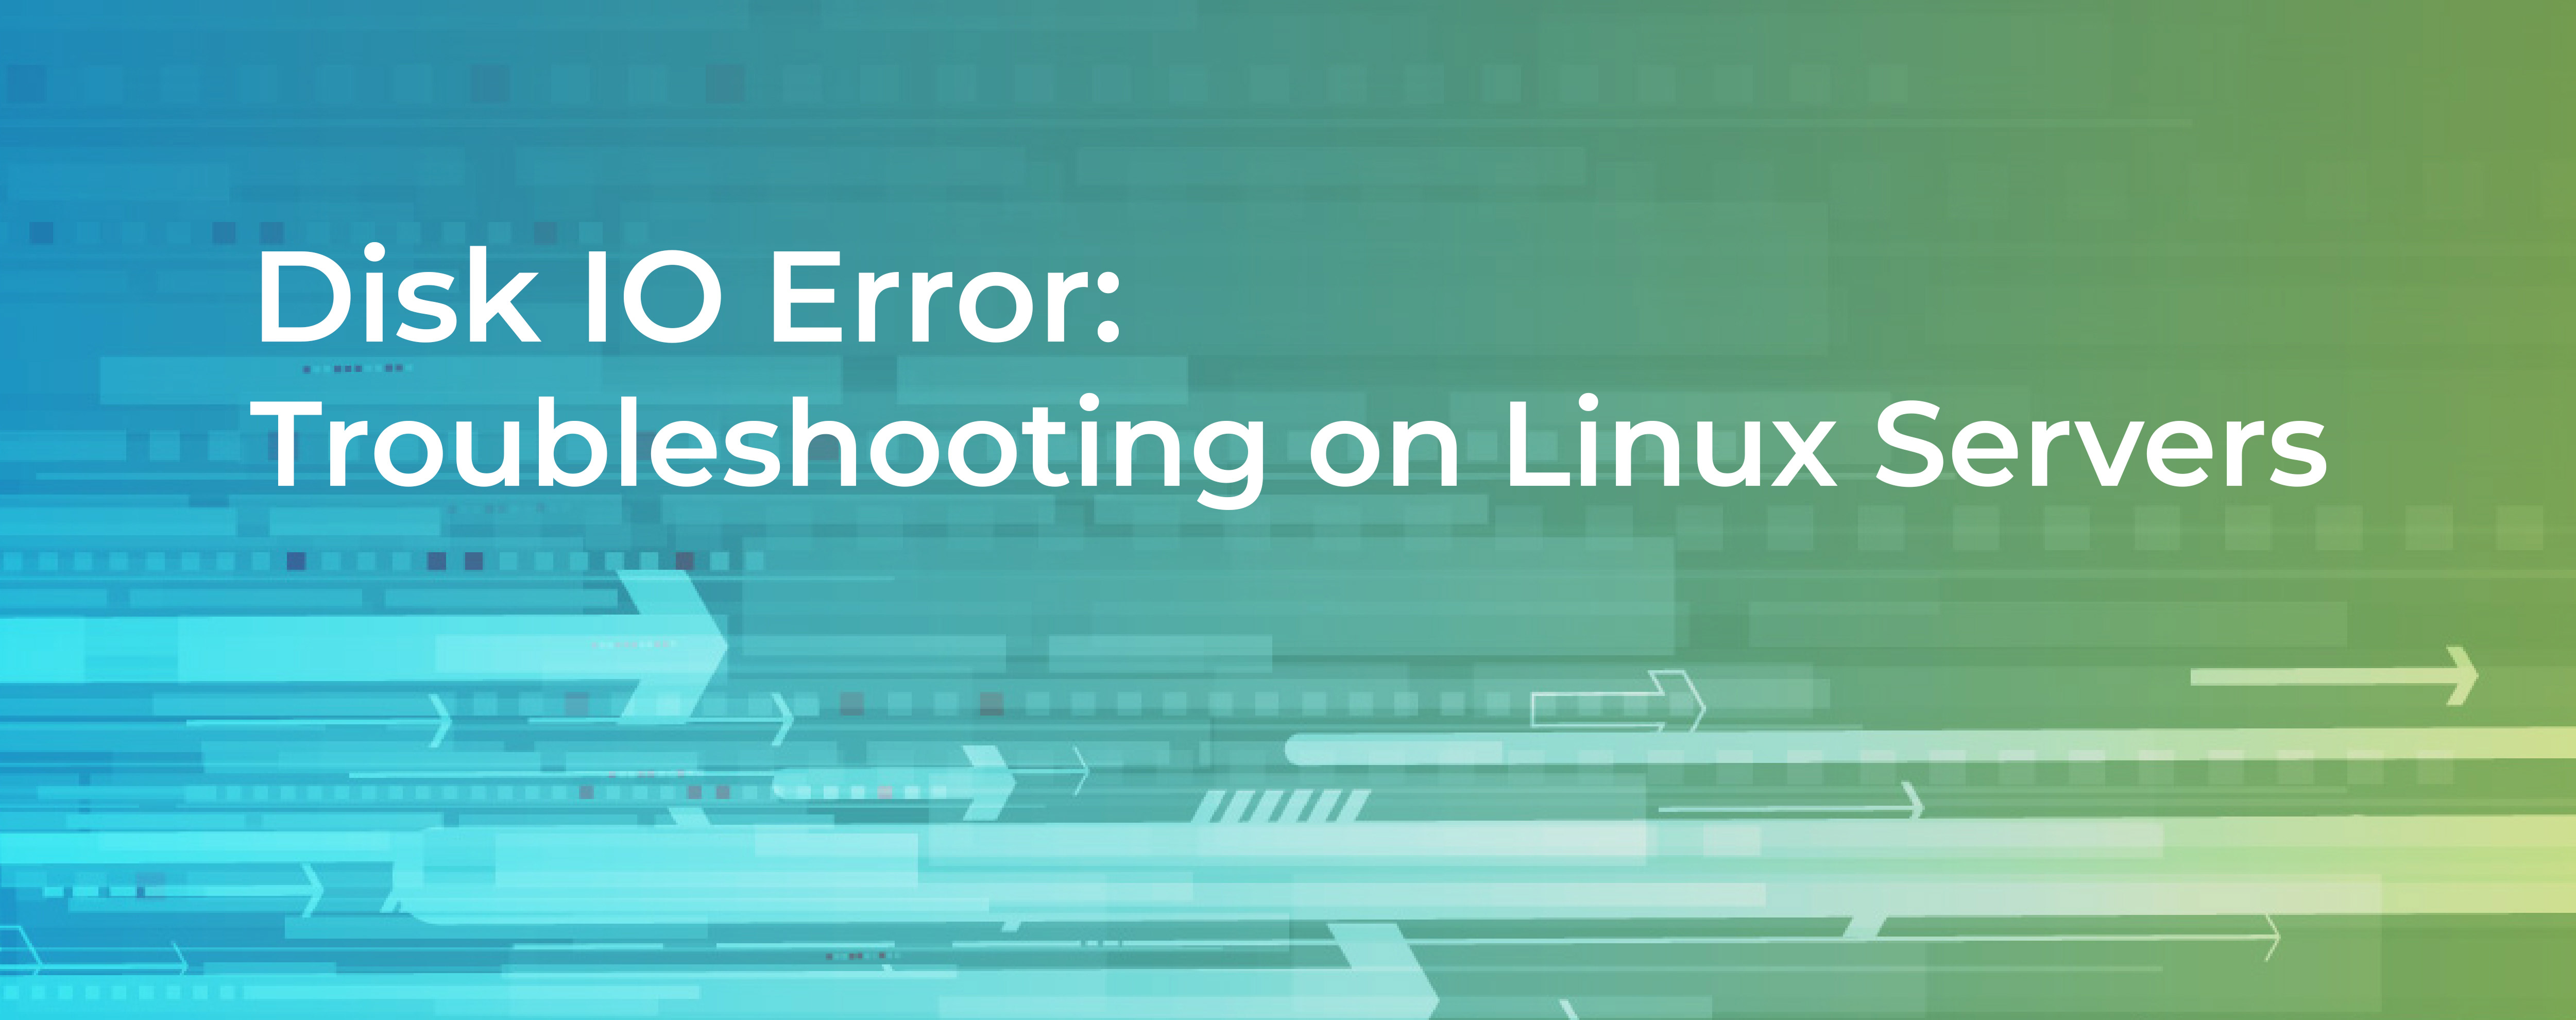 powolne rozwiązywanie problemów z serwerem hostingu internetowego linux